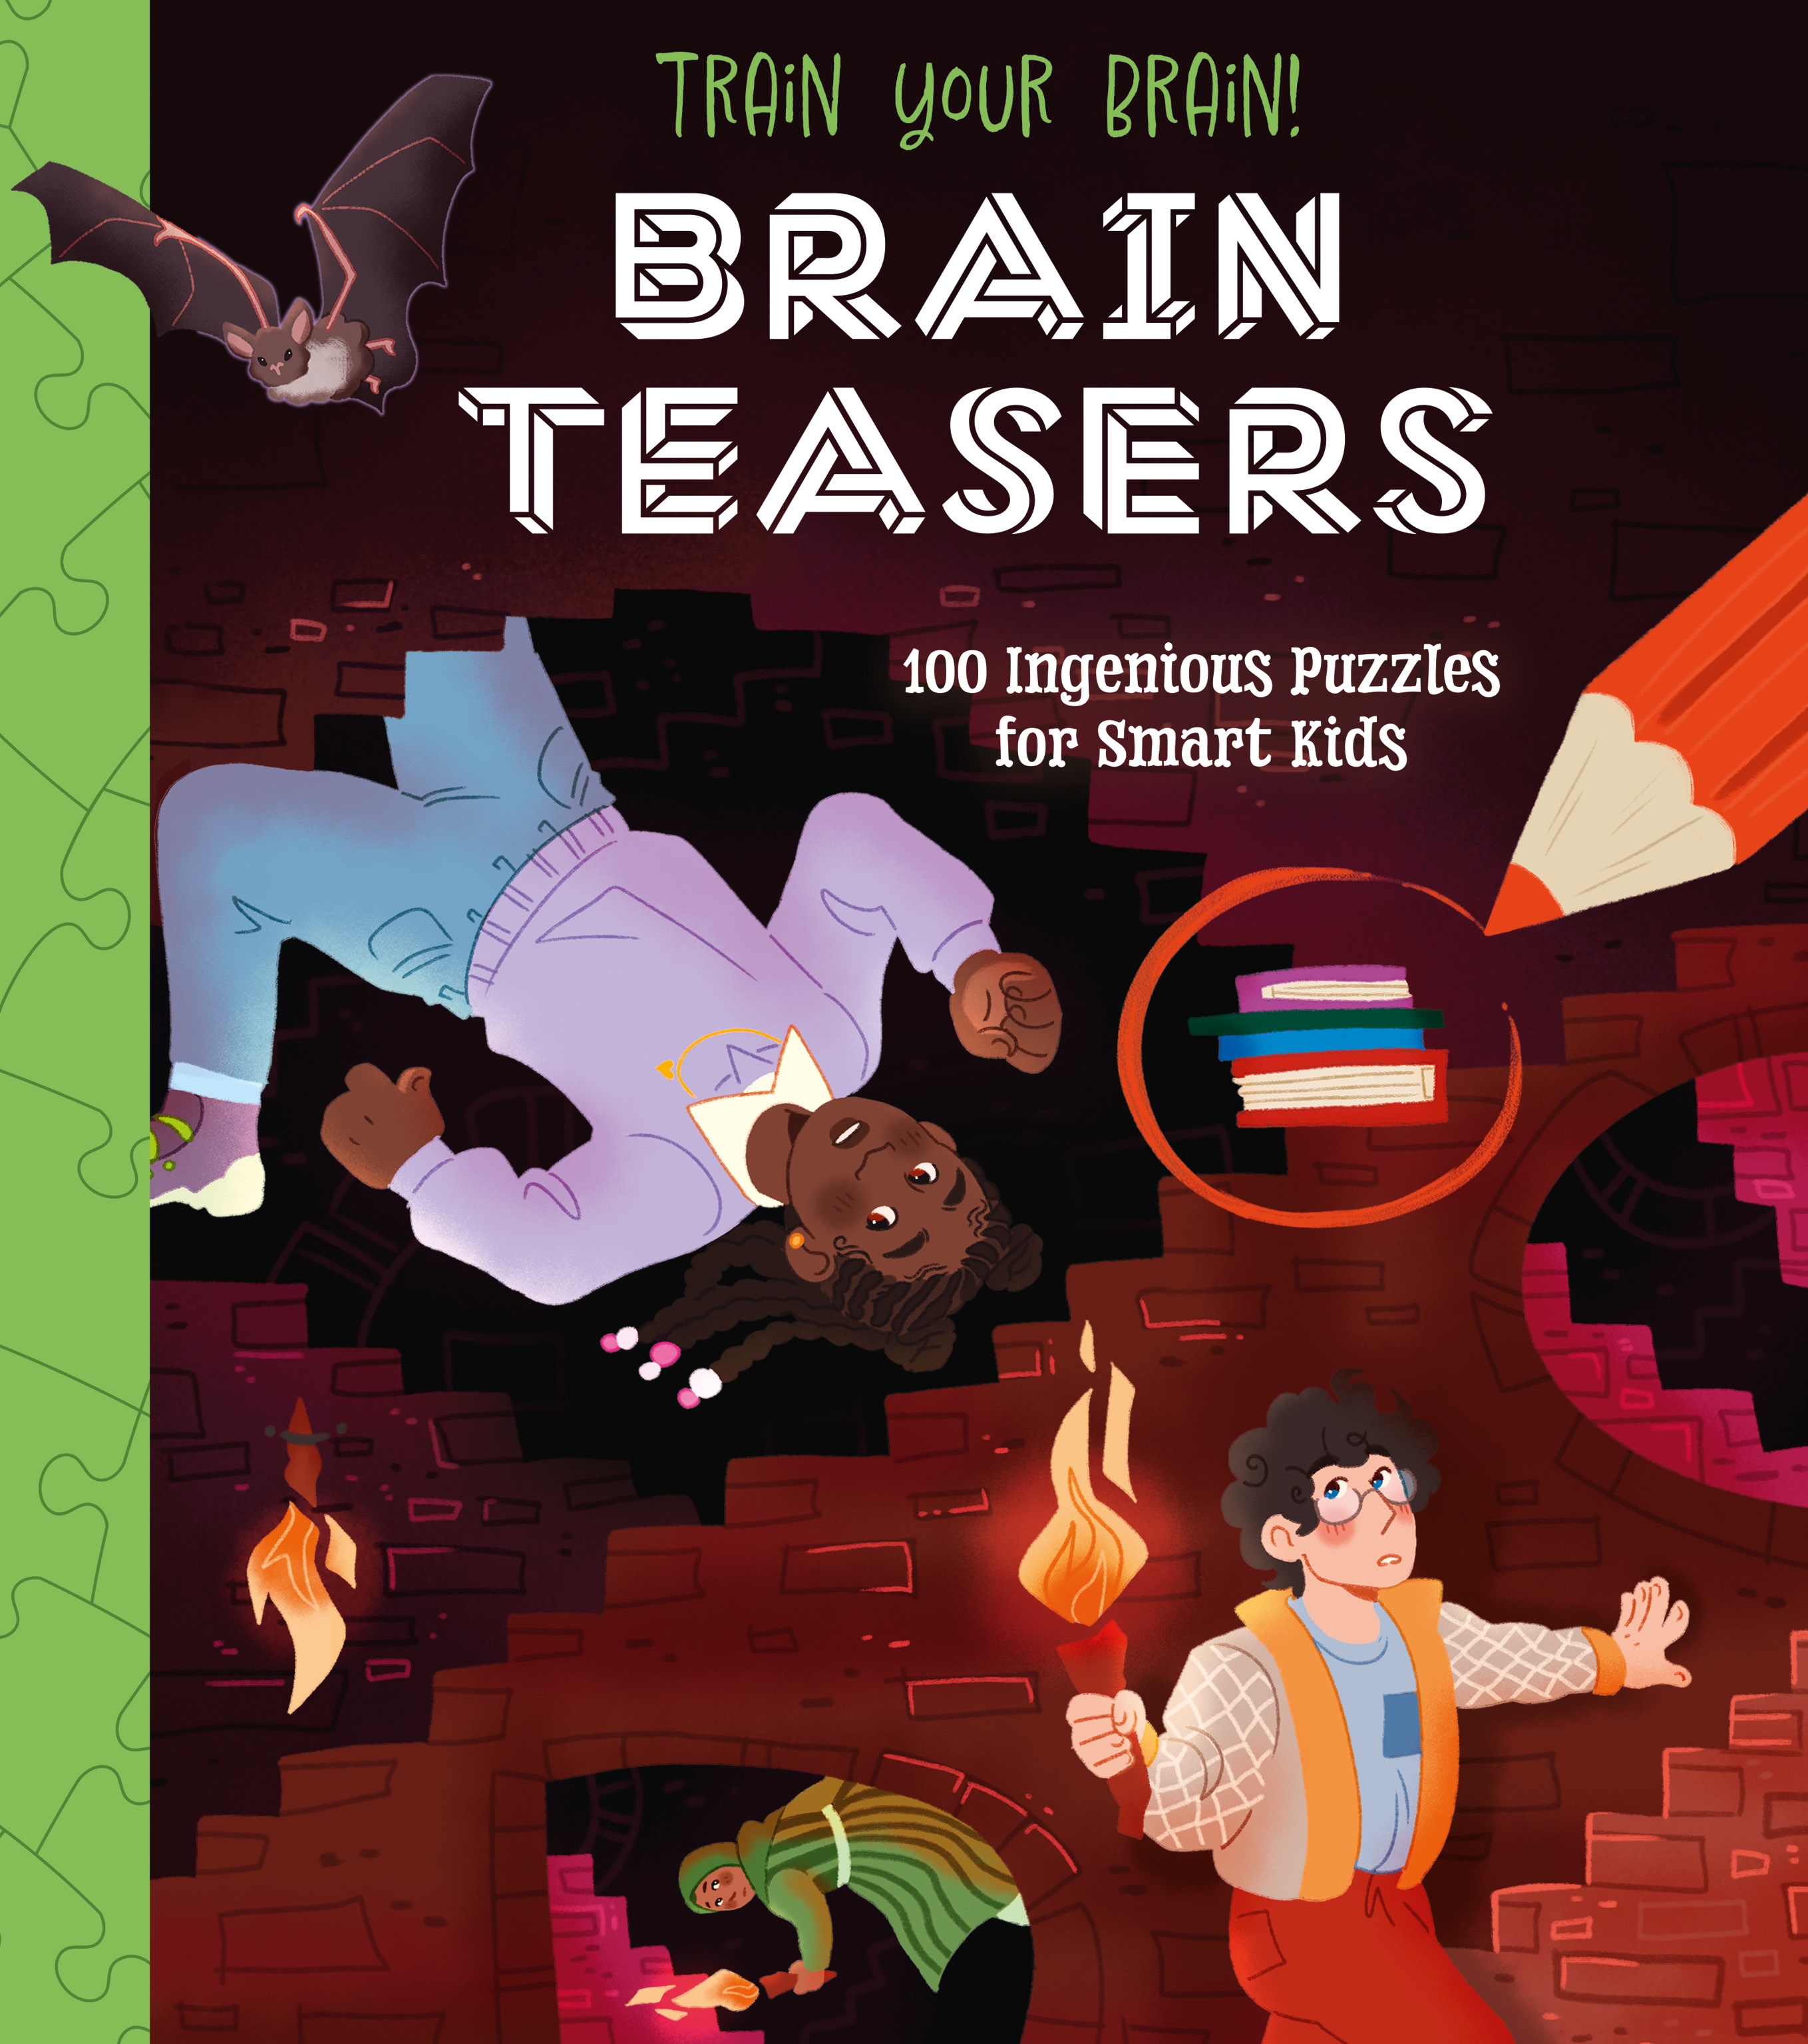 Train Your Brain! Brain Teasers